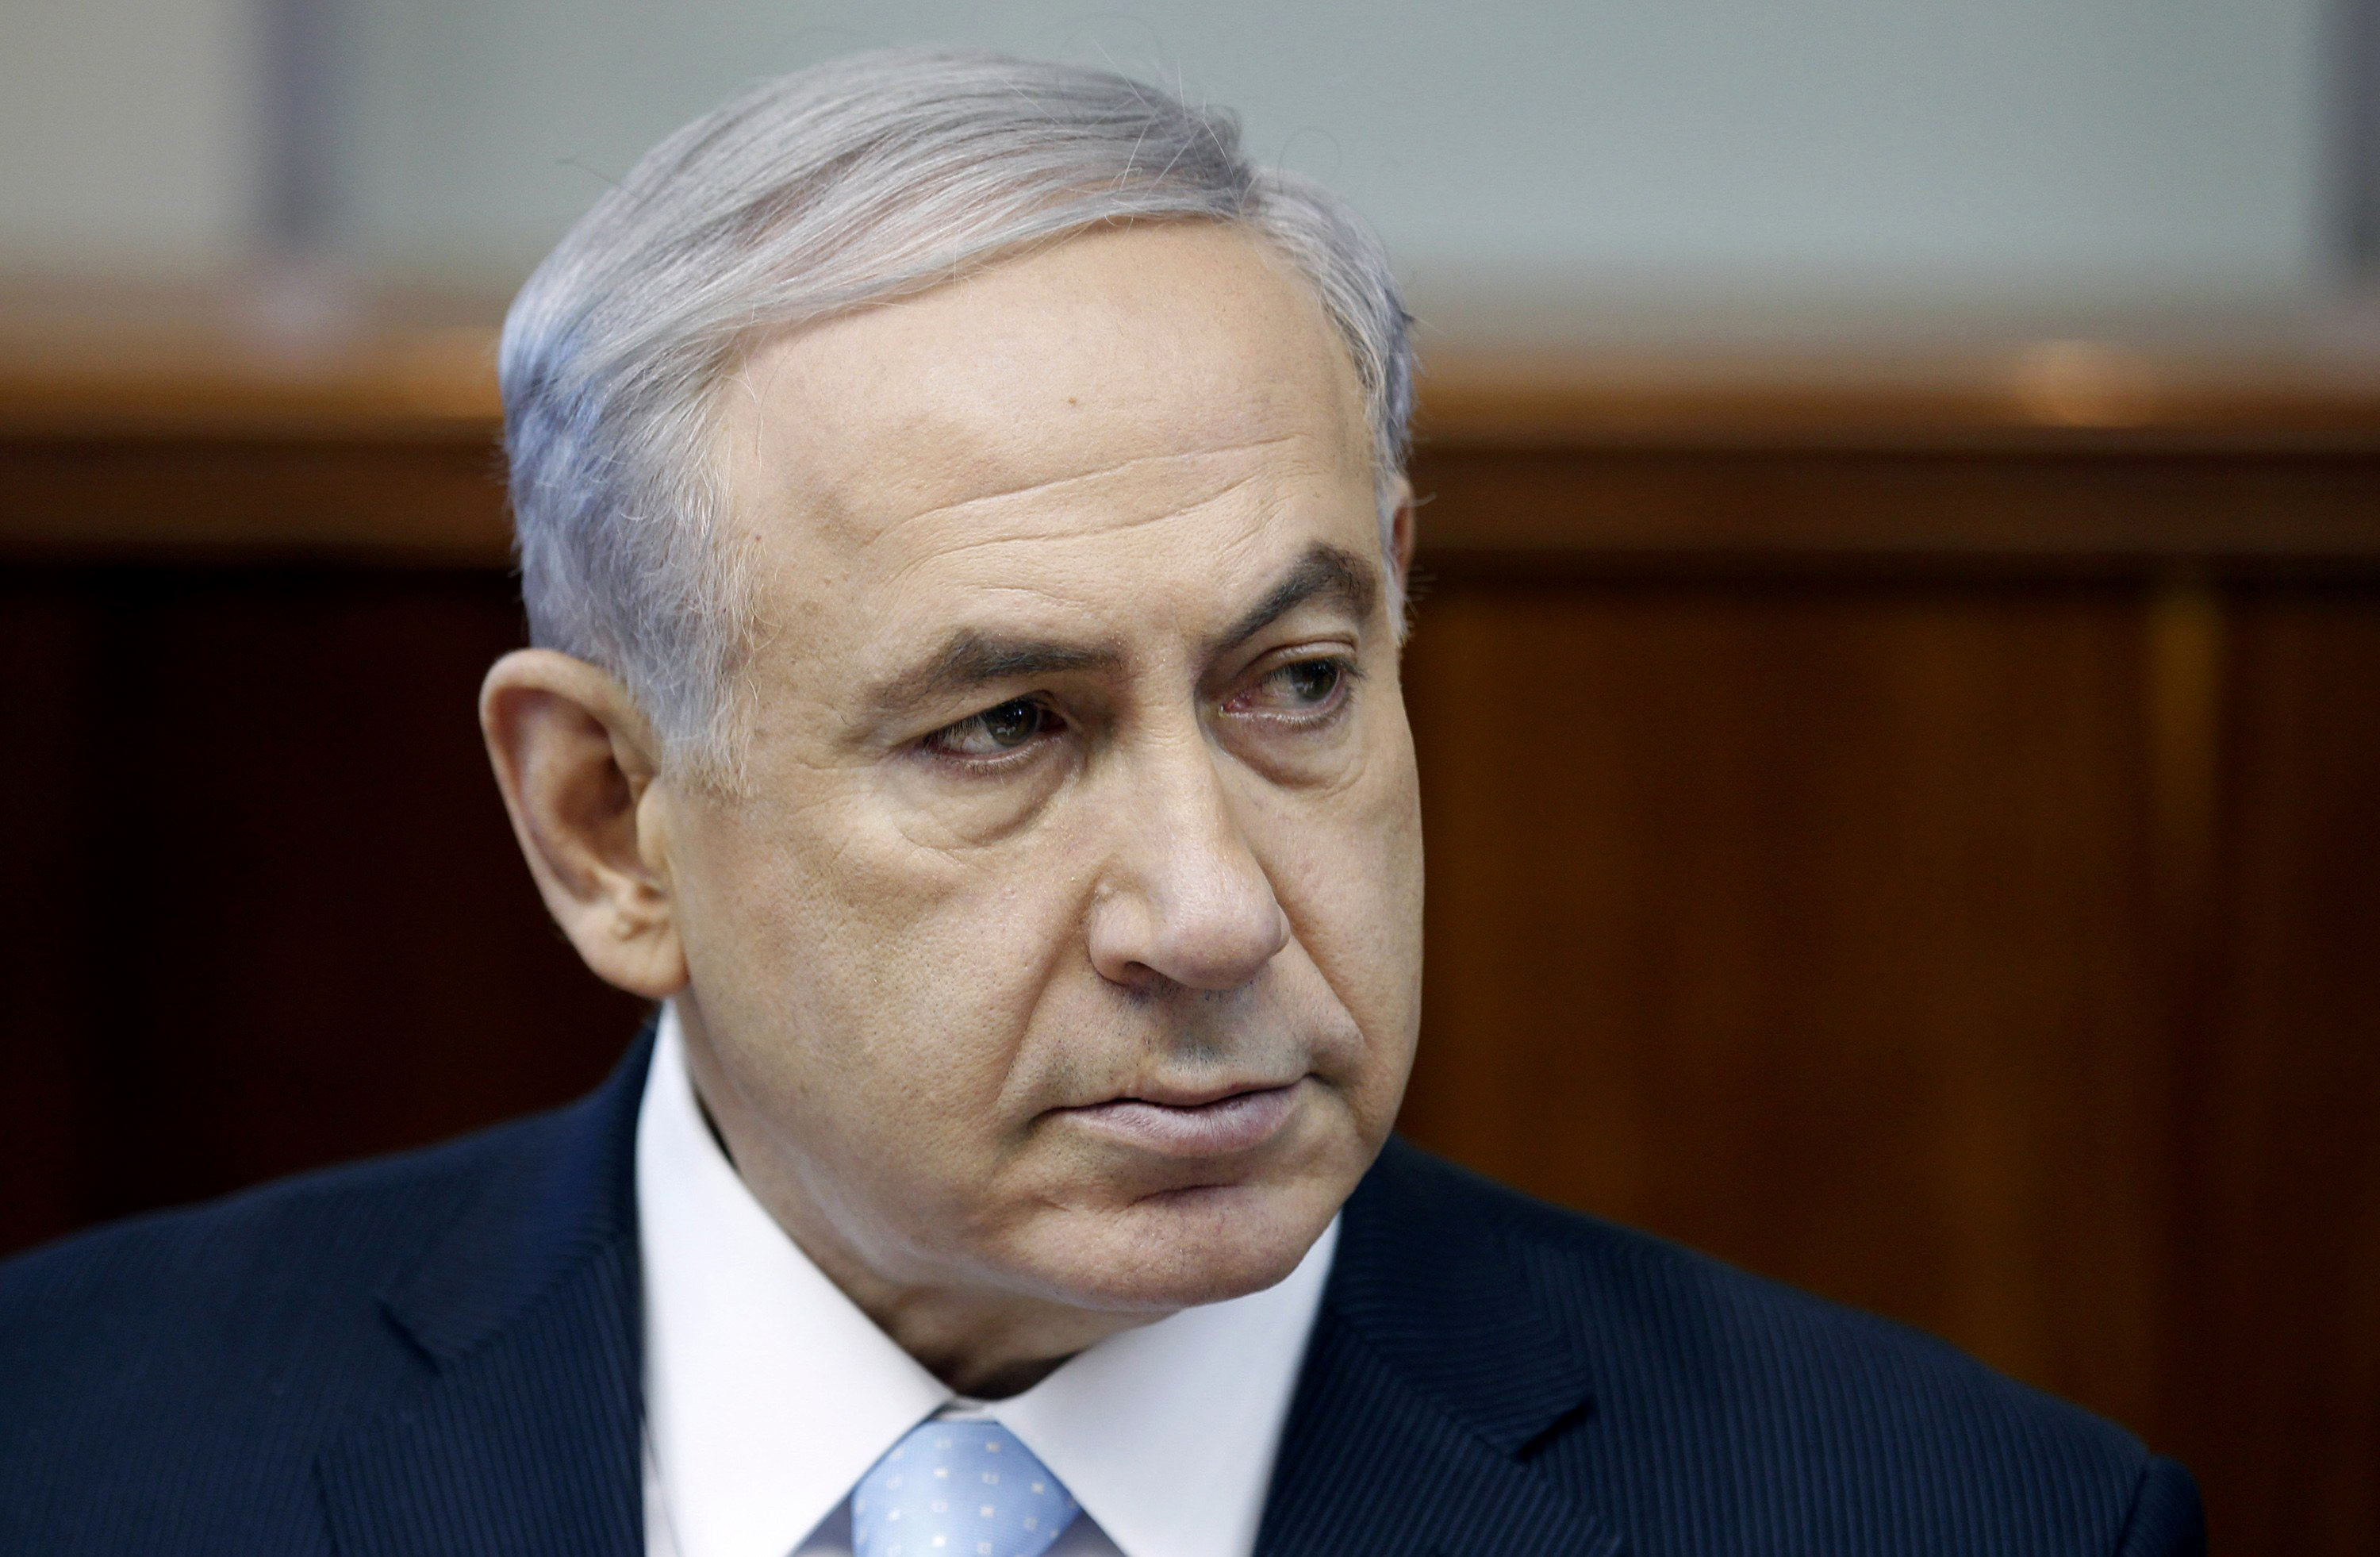 Israeli Prime Minister Benjamin Netanyahu (Baz Ratner—Reuters)